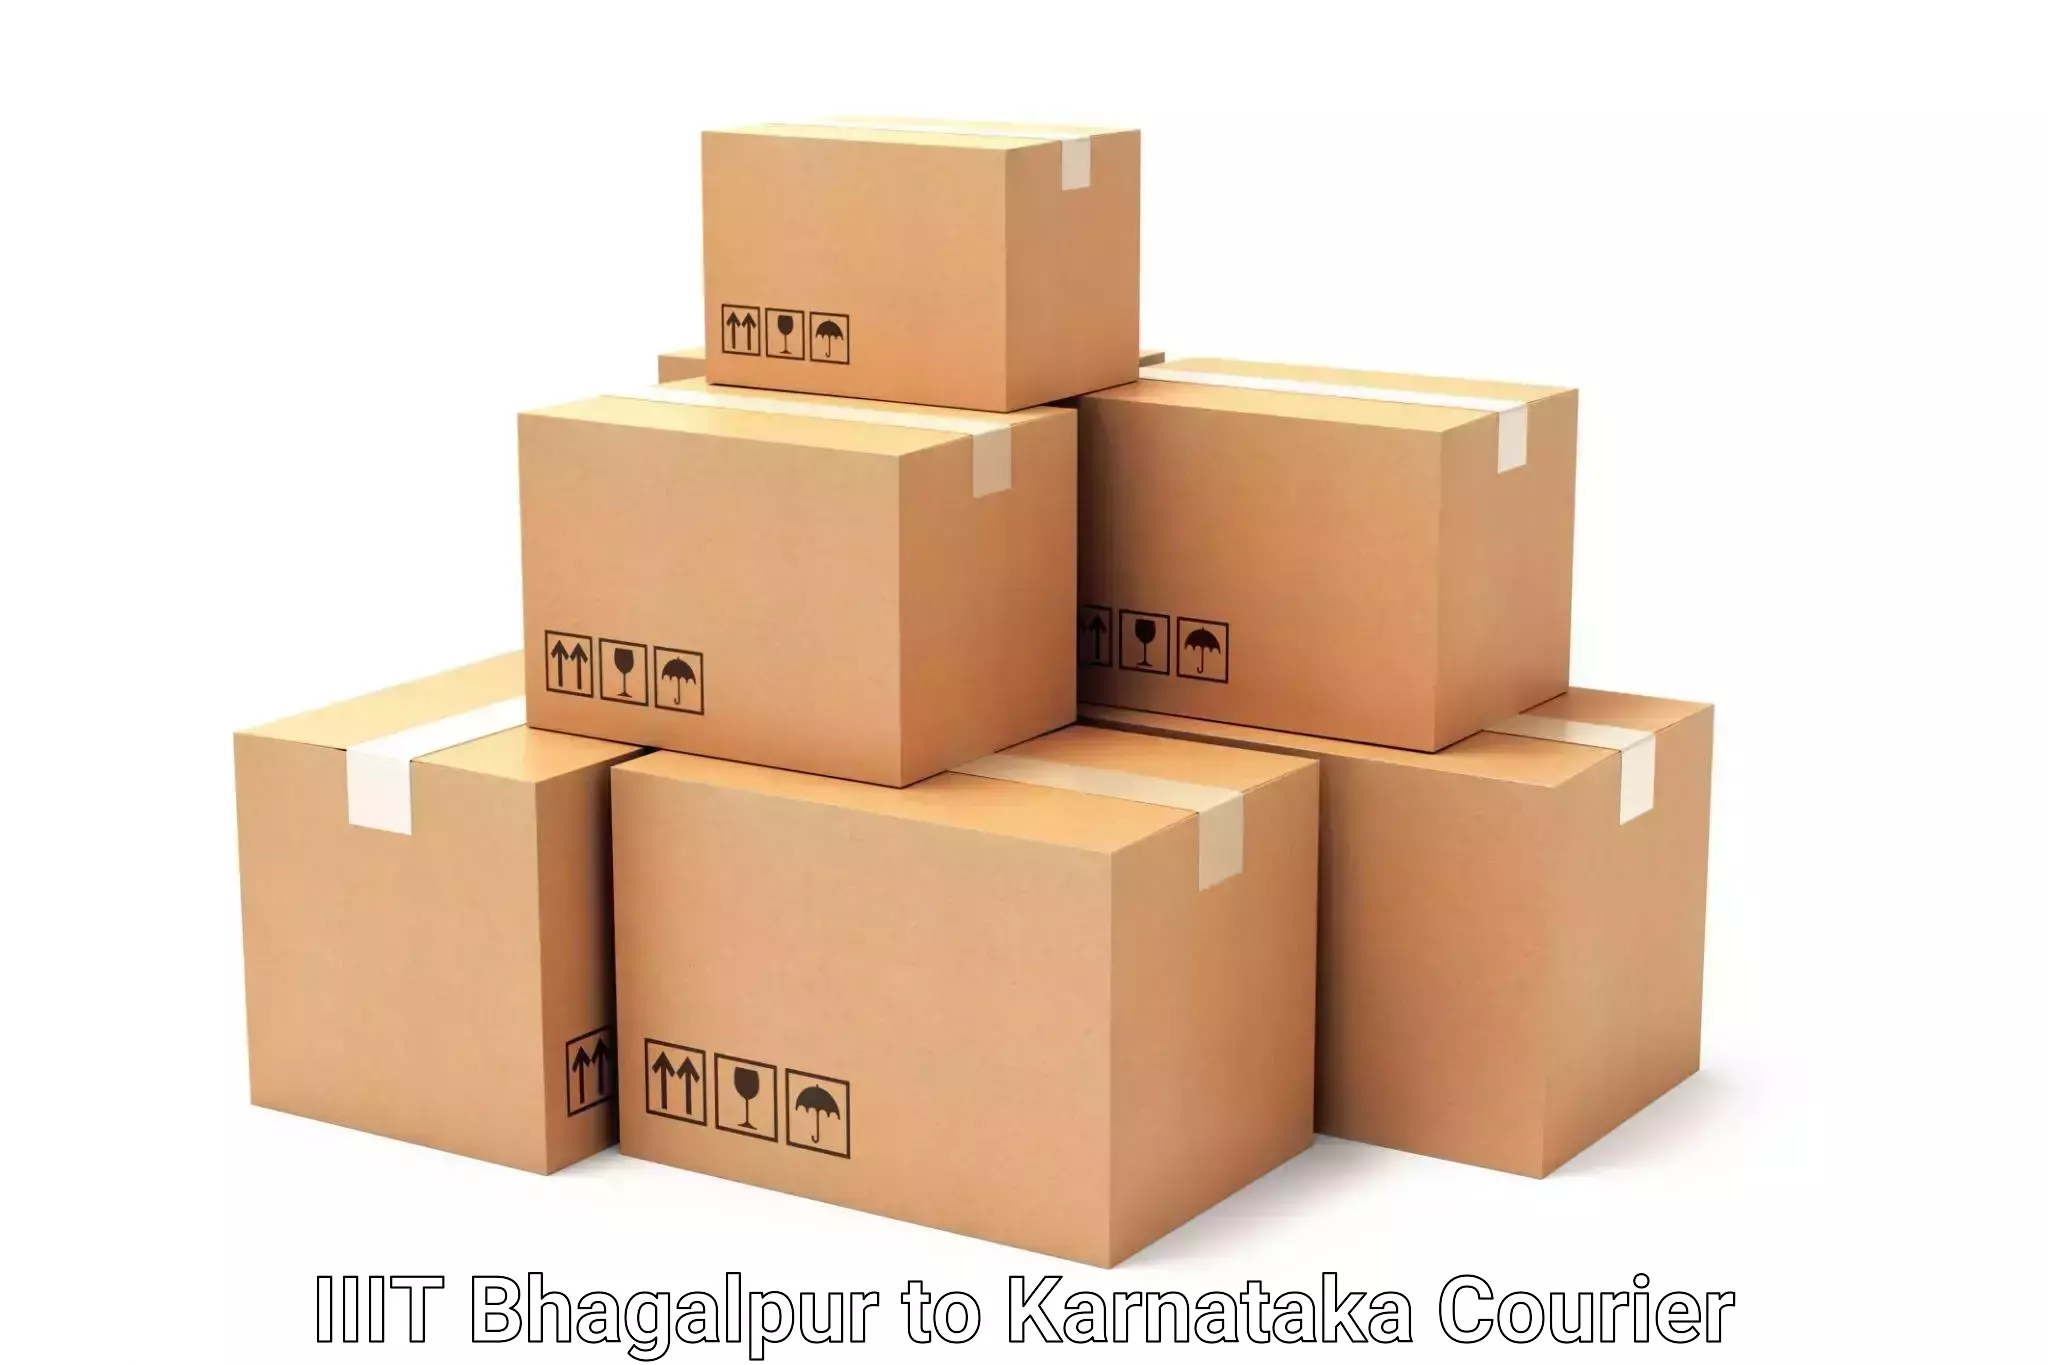 Personal effects shipping IIIT Bhagalpur to Karnataka